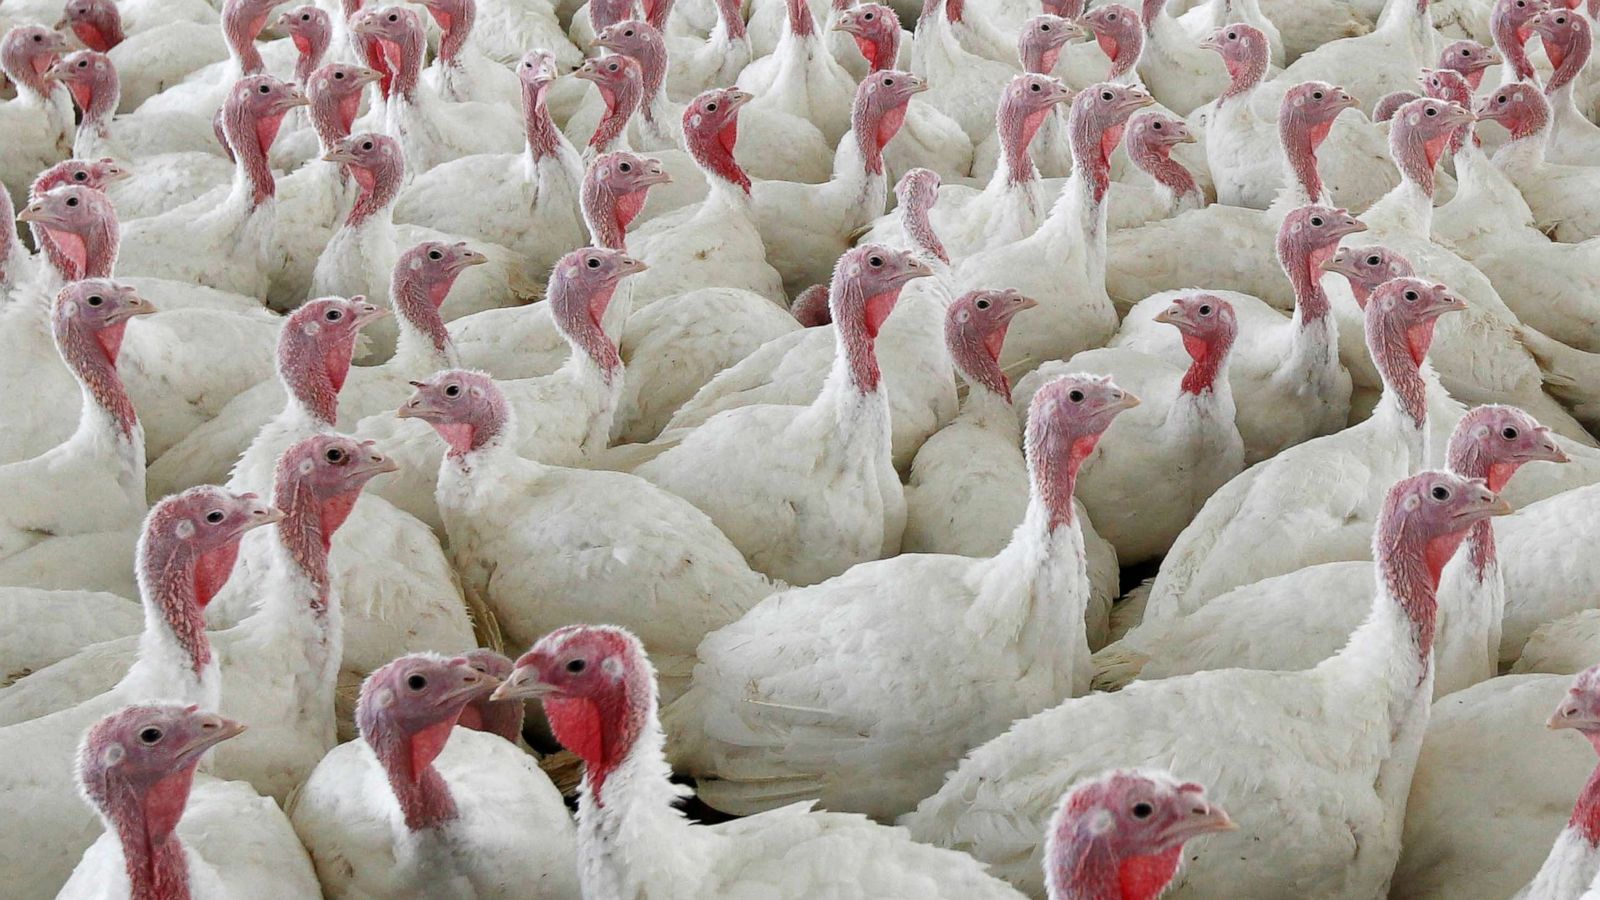 How massive avian flu outbreaks will